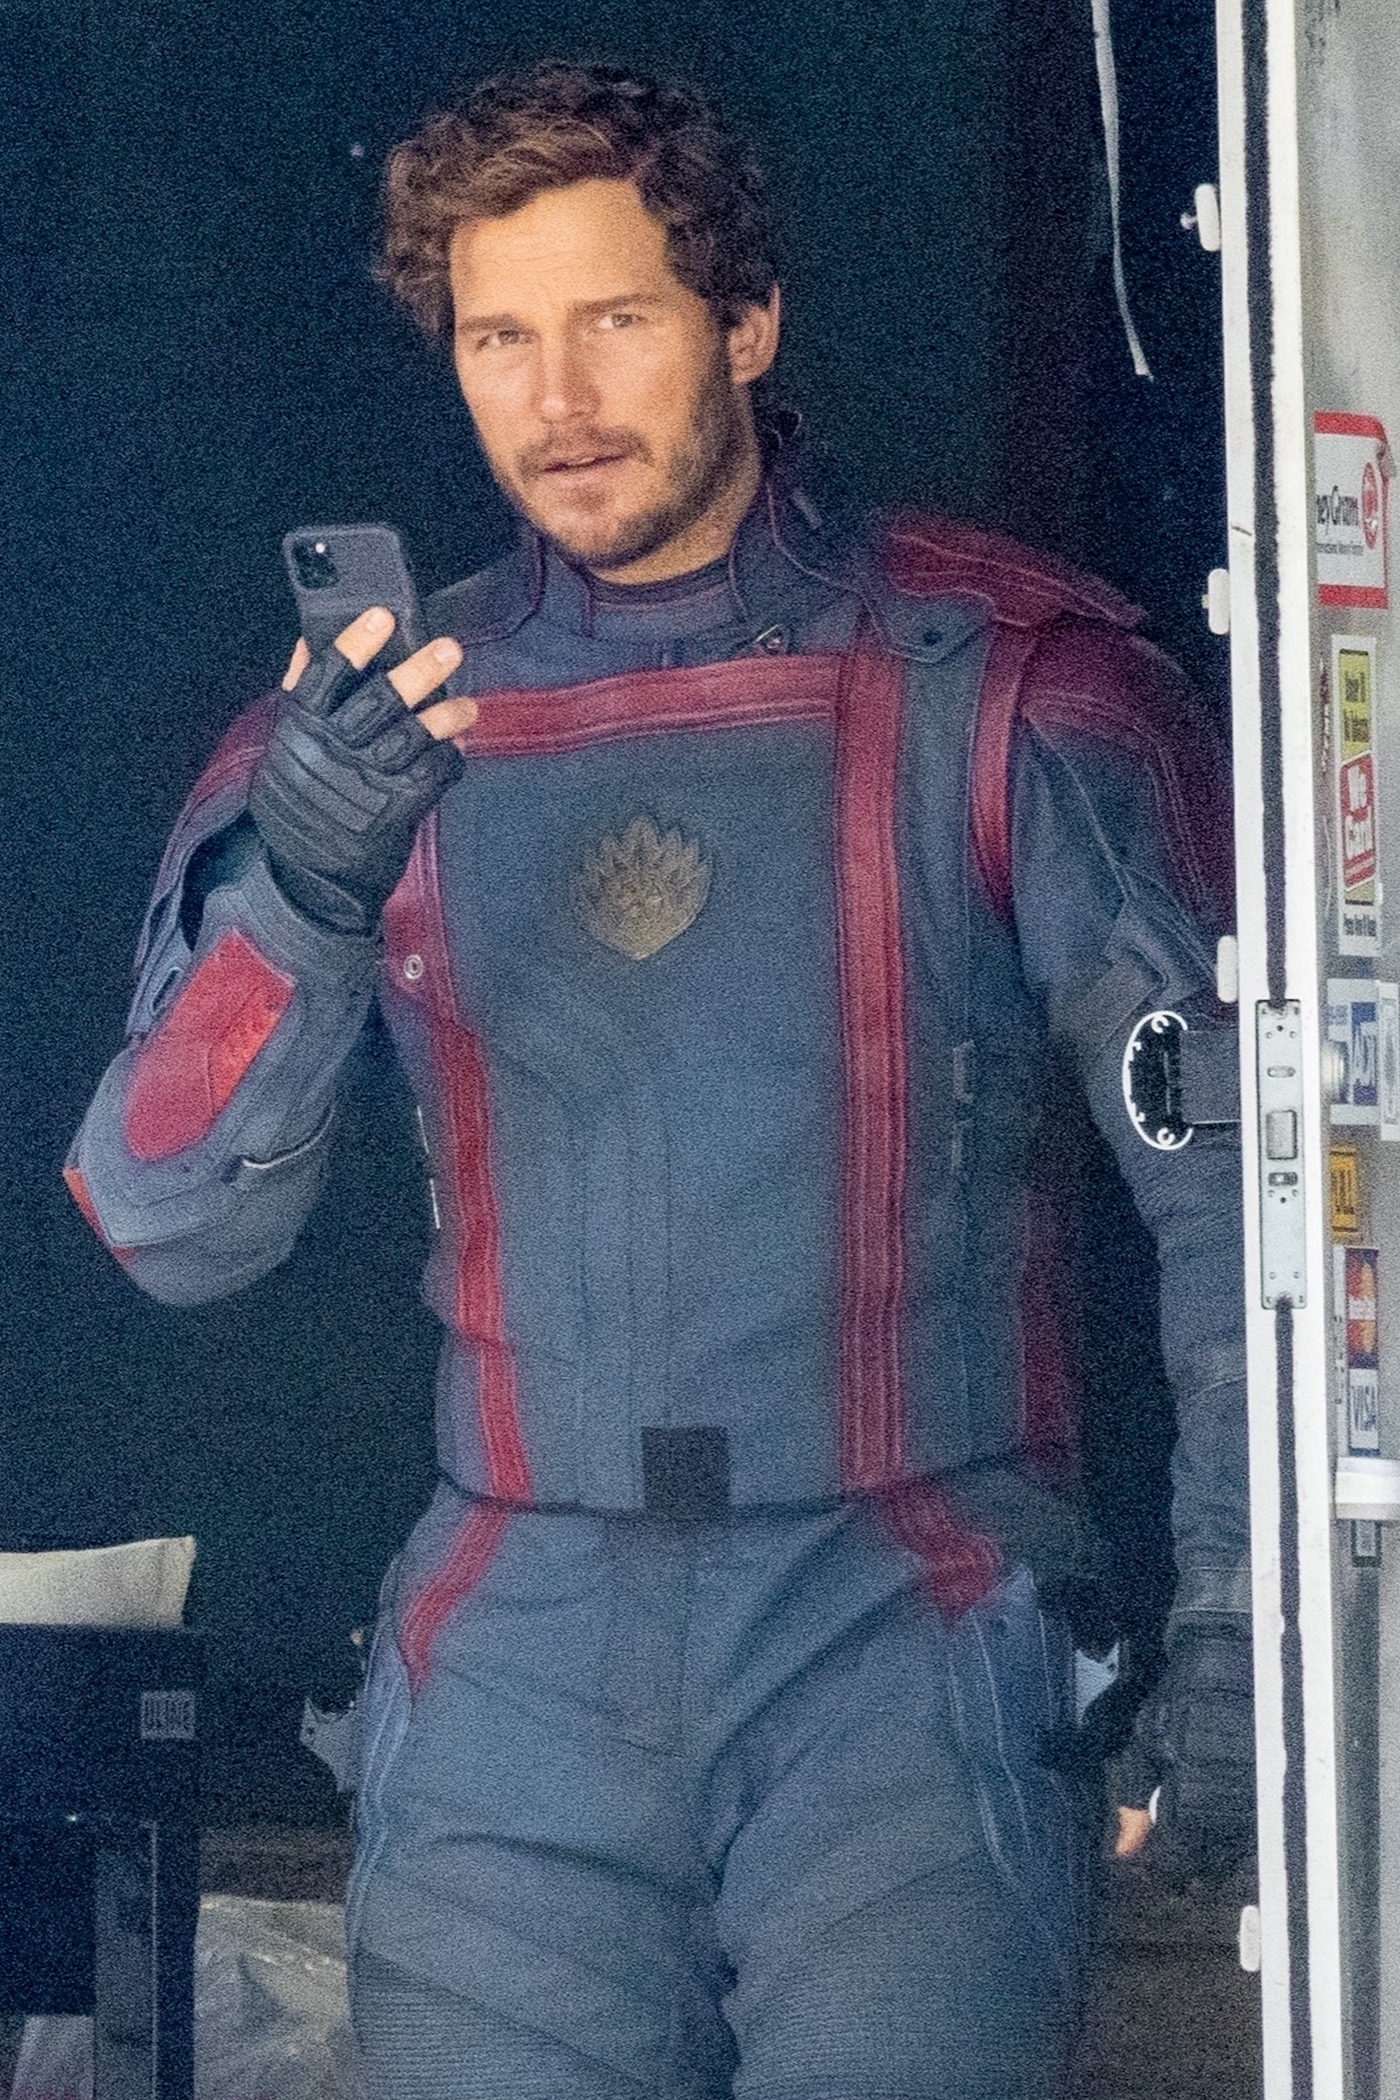 Día de trabajo. Chris Pratt fue fotografiado en el set de filmación de "'Guardians of the Galaxy Vol. 3", cuyo rodaje se lleva a cabo en Atlanta, Georgia. El actor estaba detrás de escena hablando por su celular esperando su turno para seguir con el plan del guion